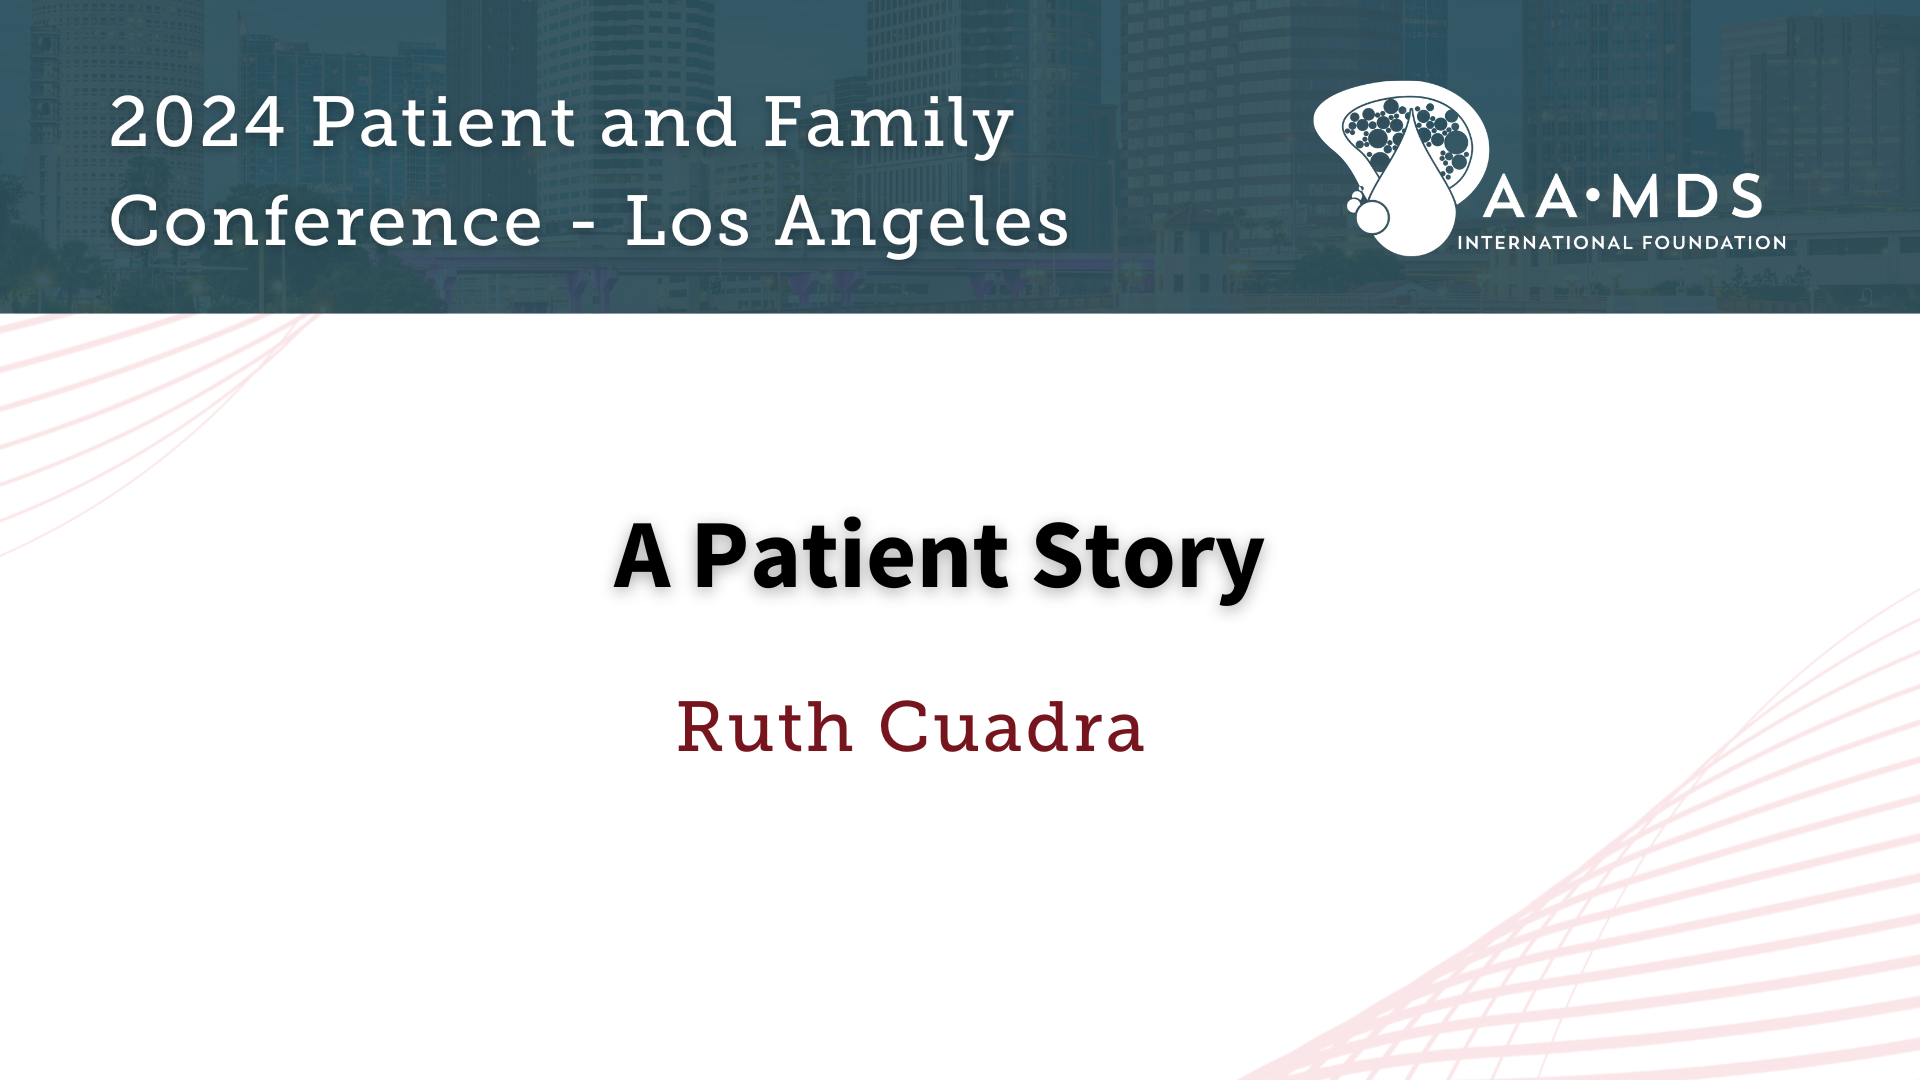 A Patient Story